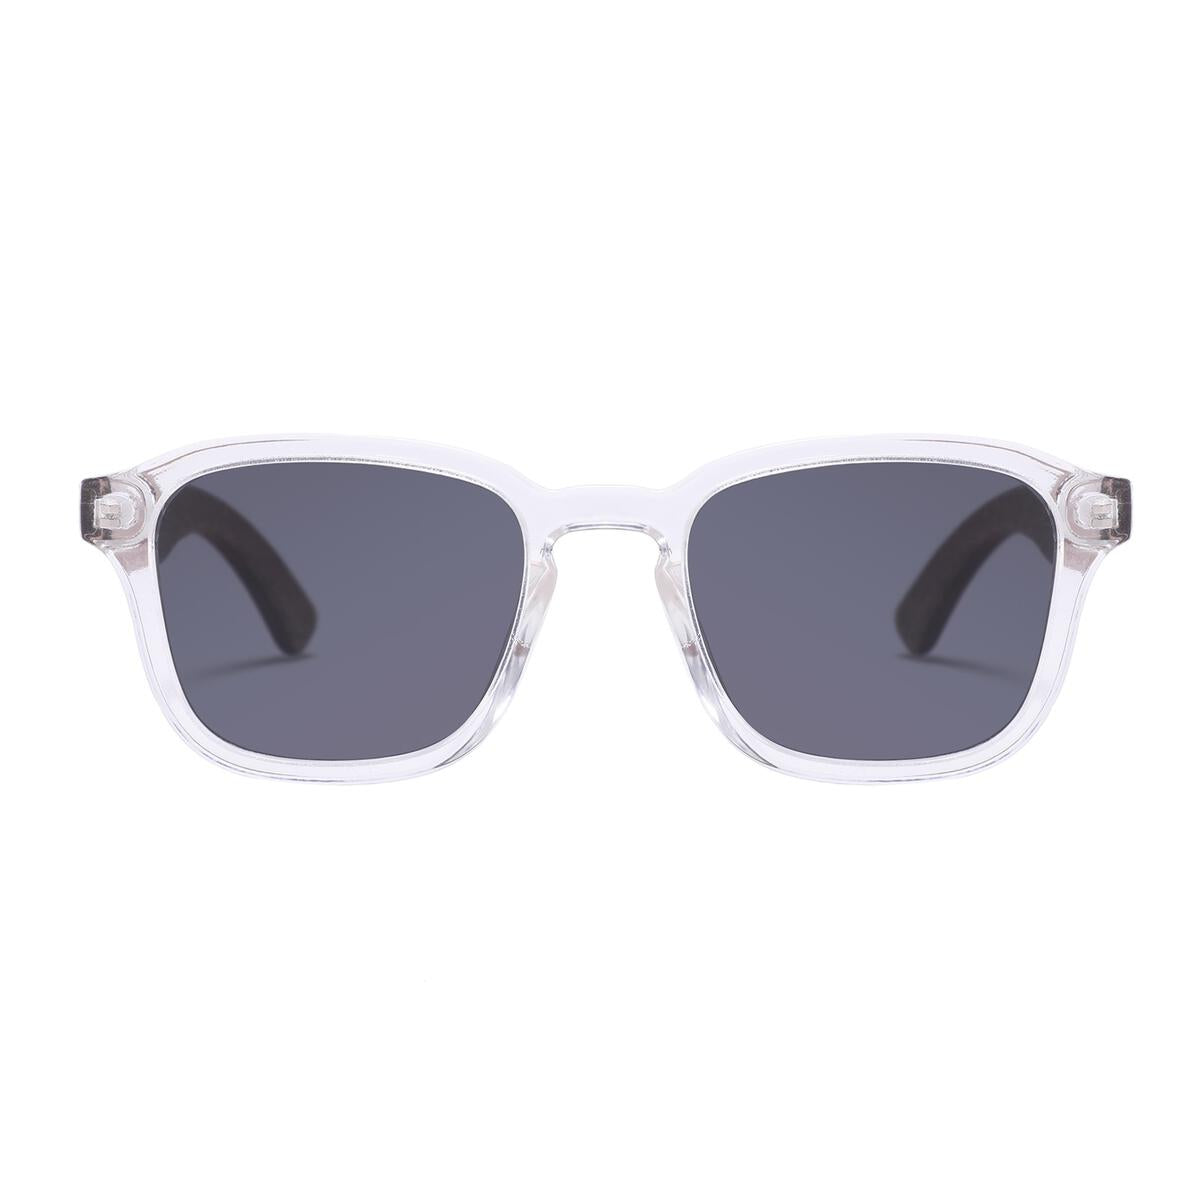 Kuma Polarized Sunglasses Victoria Sunglasses Kuma Sunglasses   